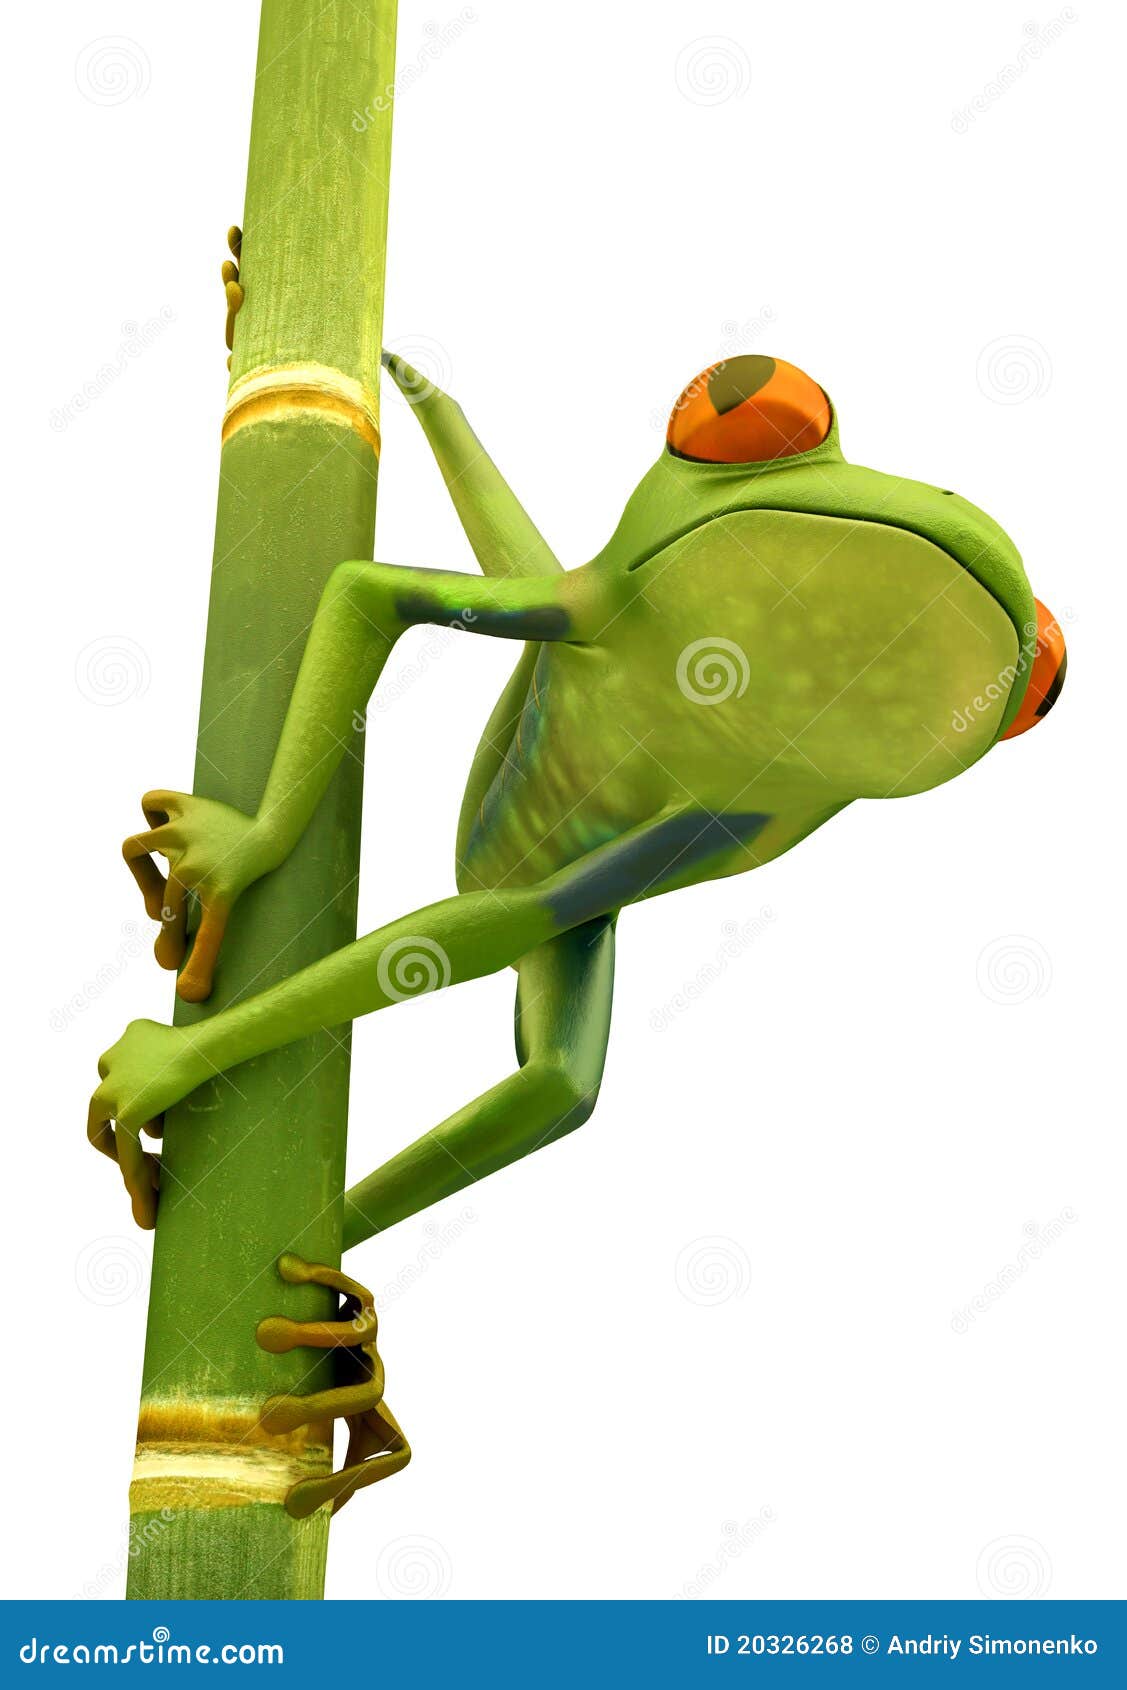 tree frog on bamboo bole 